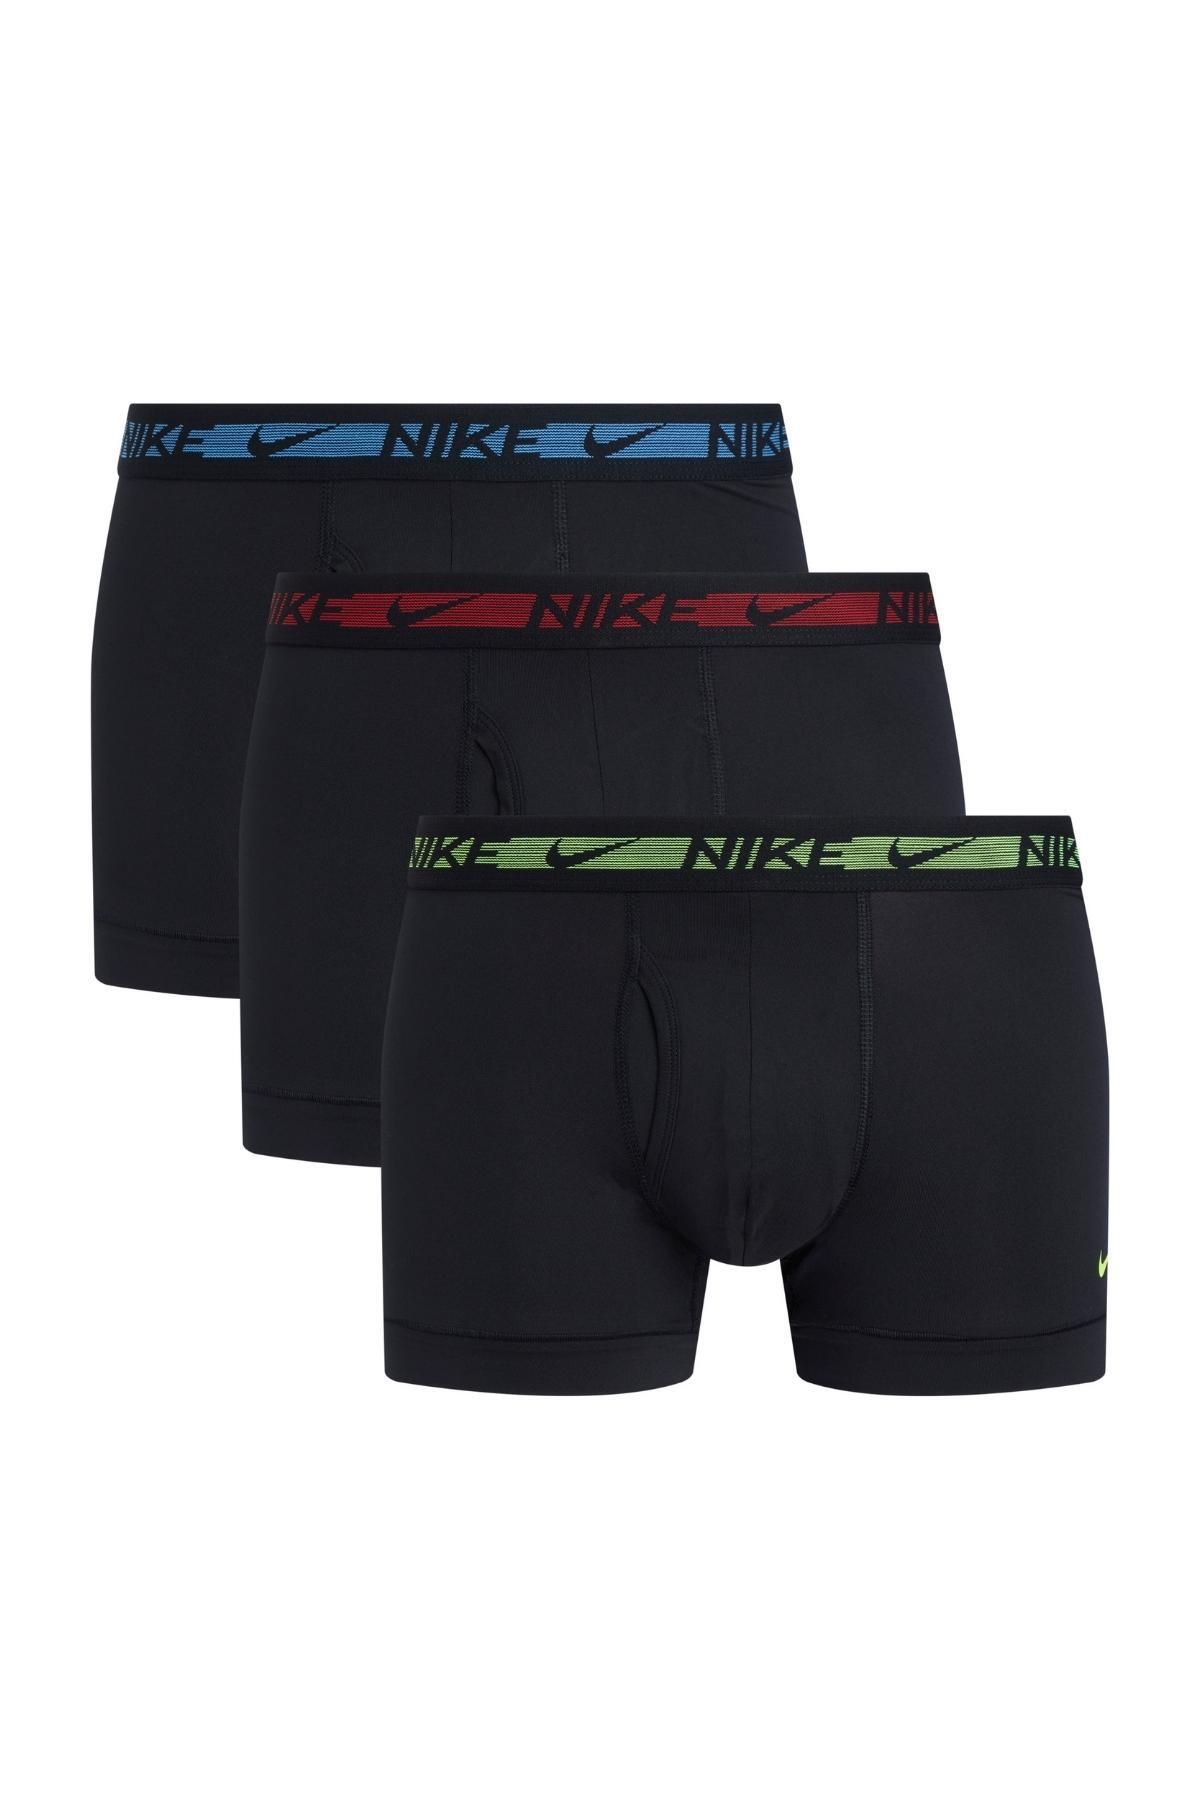 Nike Erkek Marka Logolu Elastik Bantlı Günlük Kullanıma Uygun Siyah3 Boxer 0000Ke1152-9V5